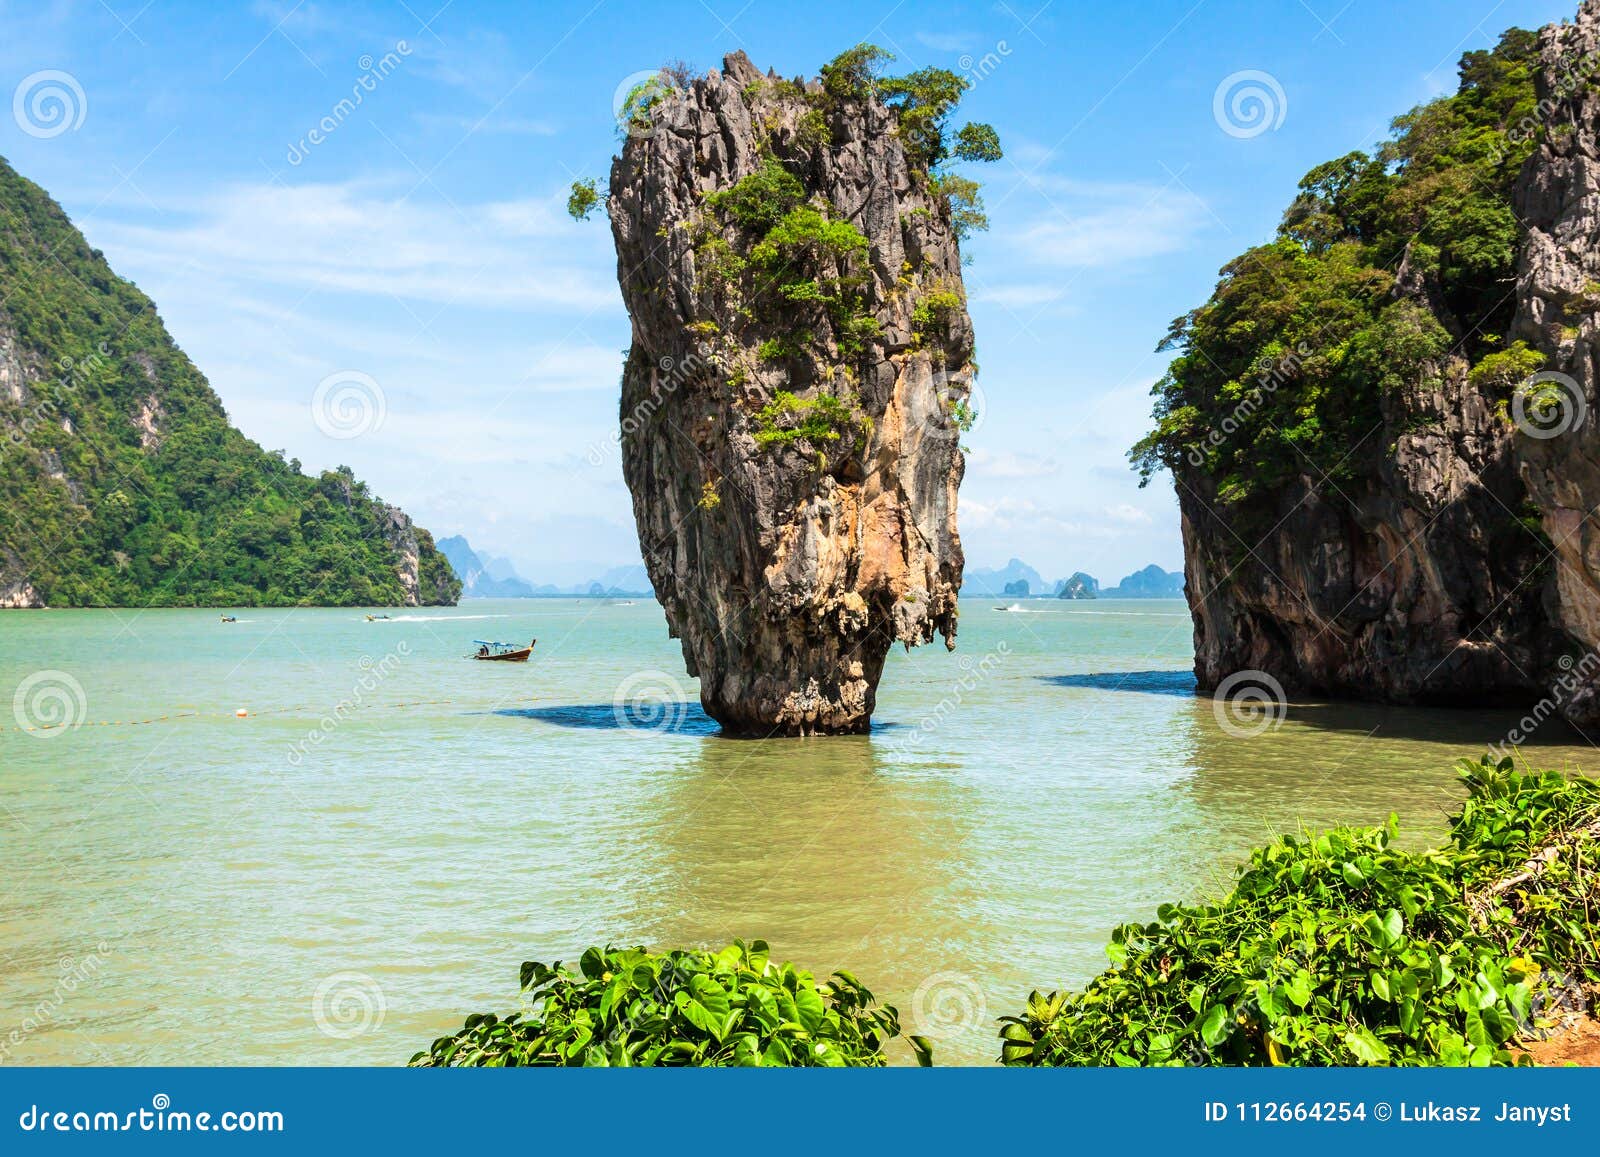 Phuket James Bond Island Phang Nga Stock Photo - Image of resort, local ...